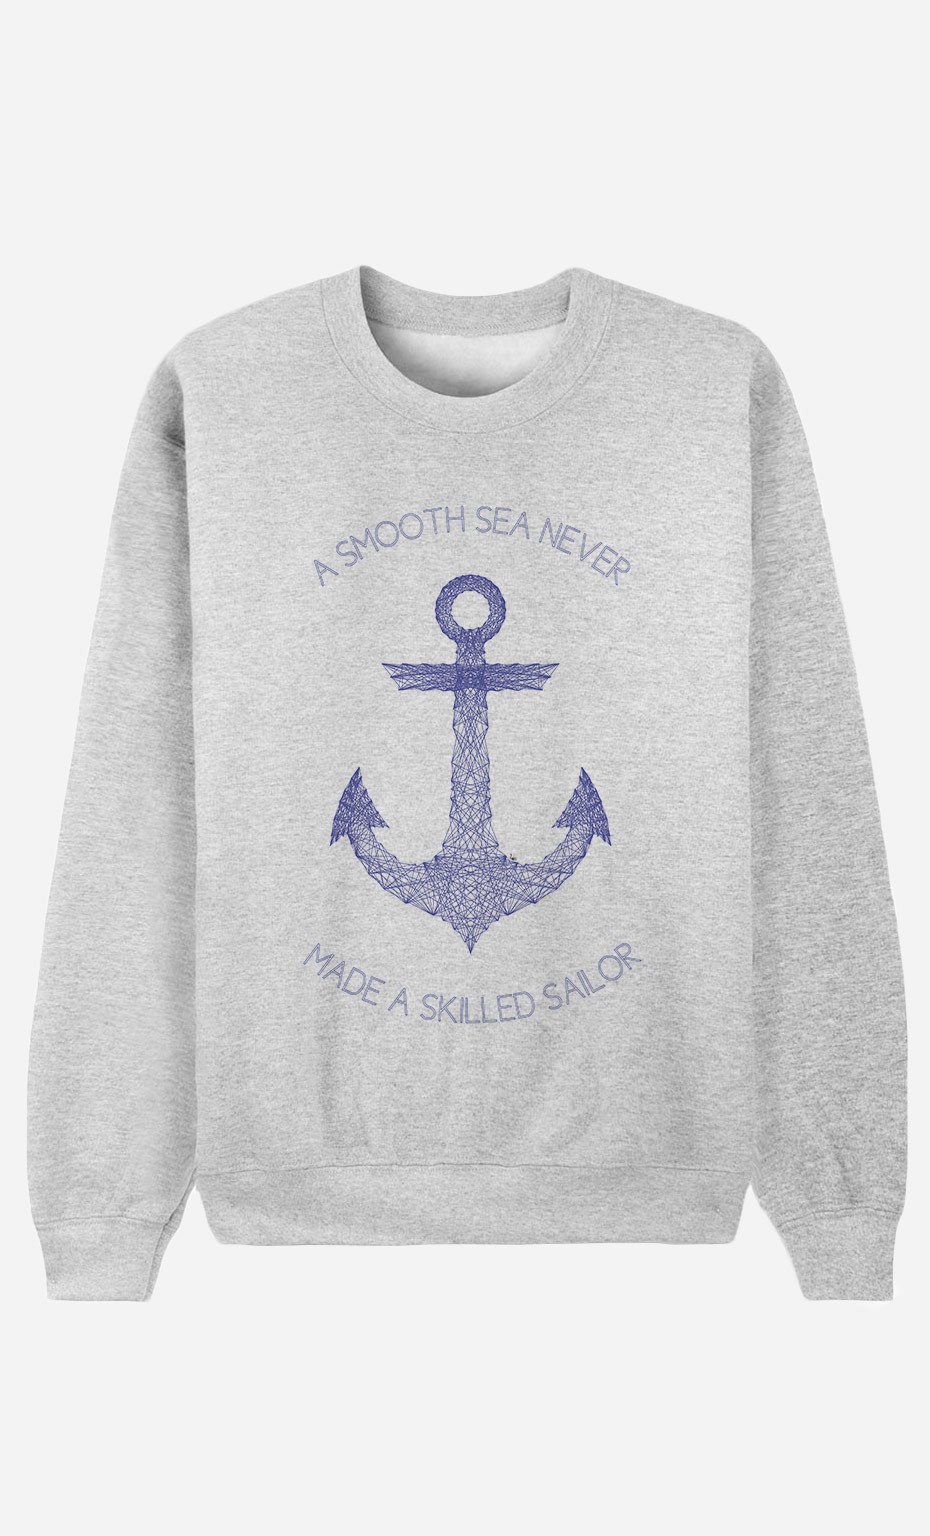 Sweatshirt Smooth Sea